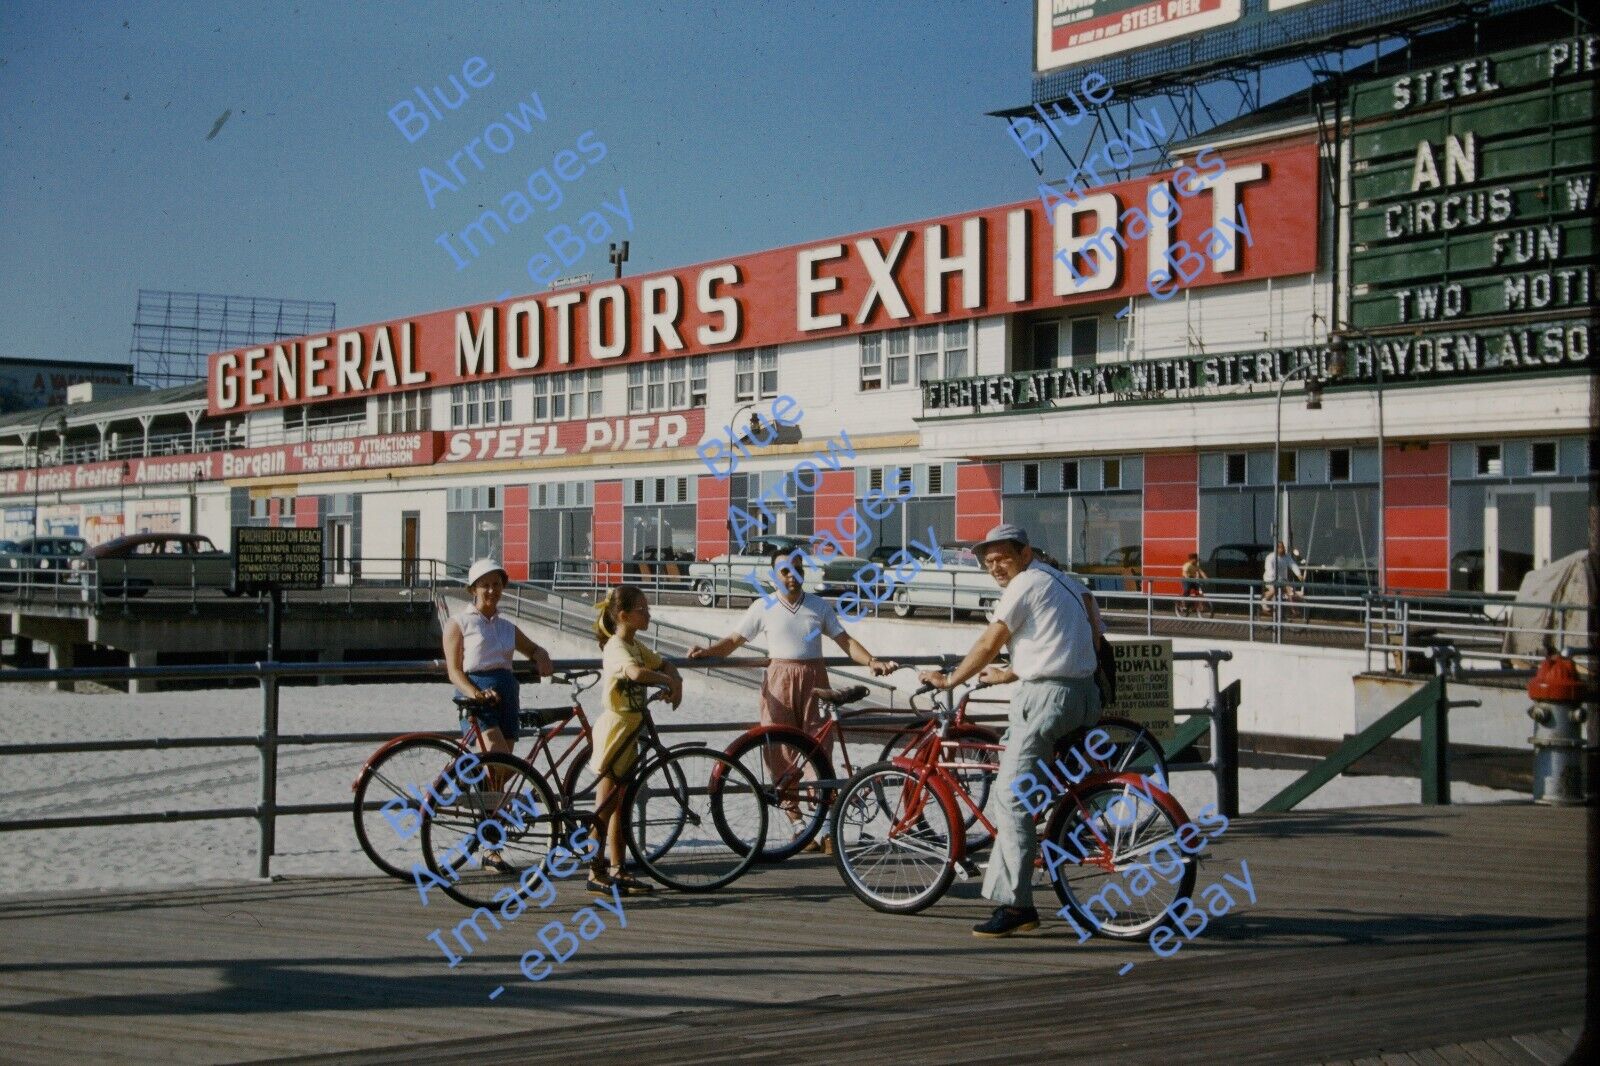 1954 35mm slide Atlantic City New Jersey Steel Pier General Motors Exhibit #2144